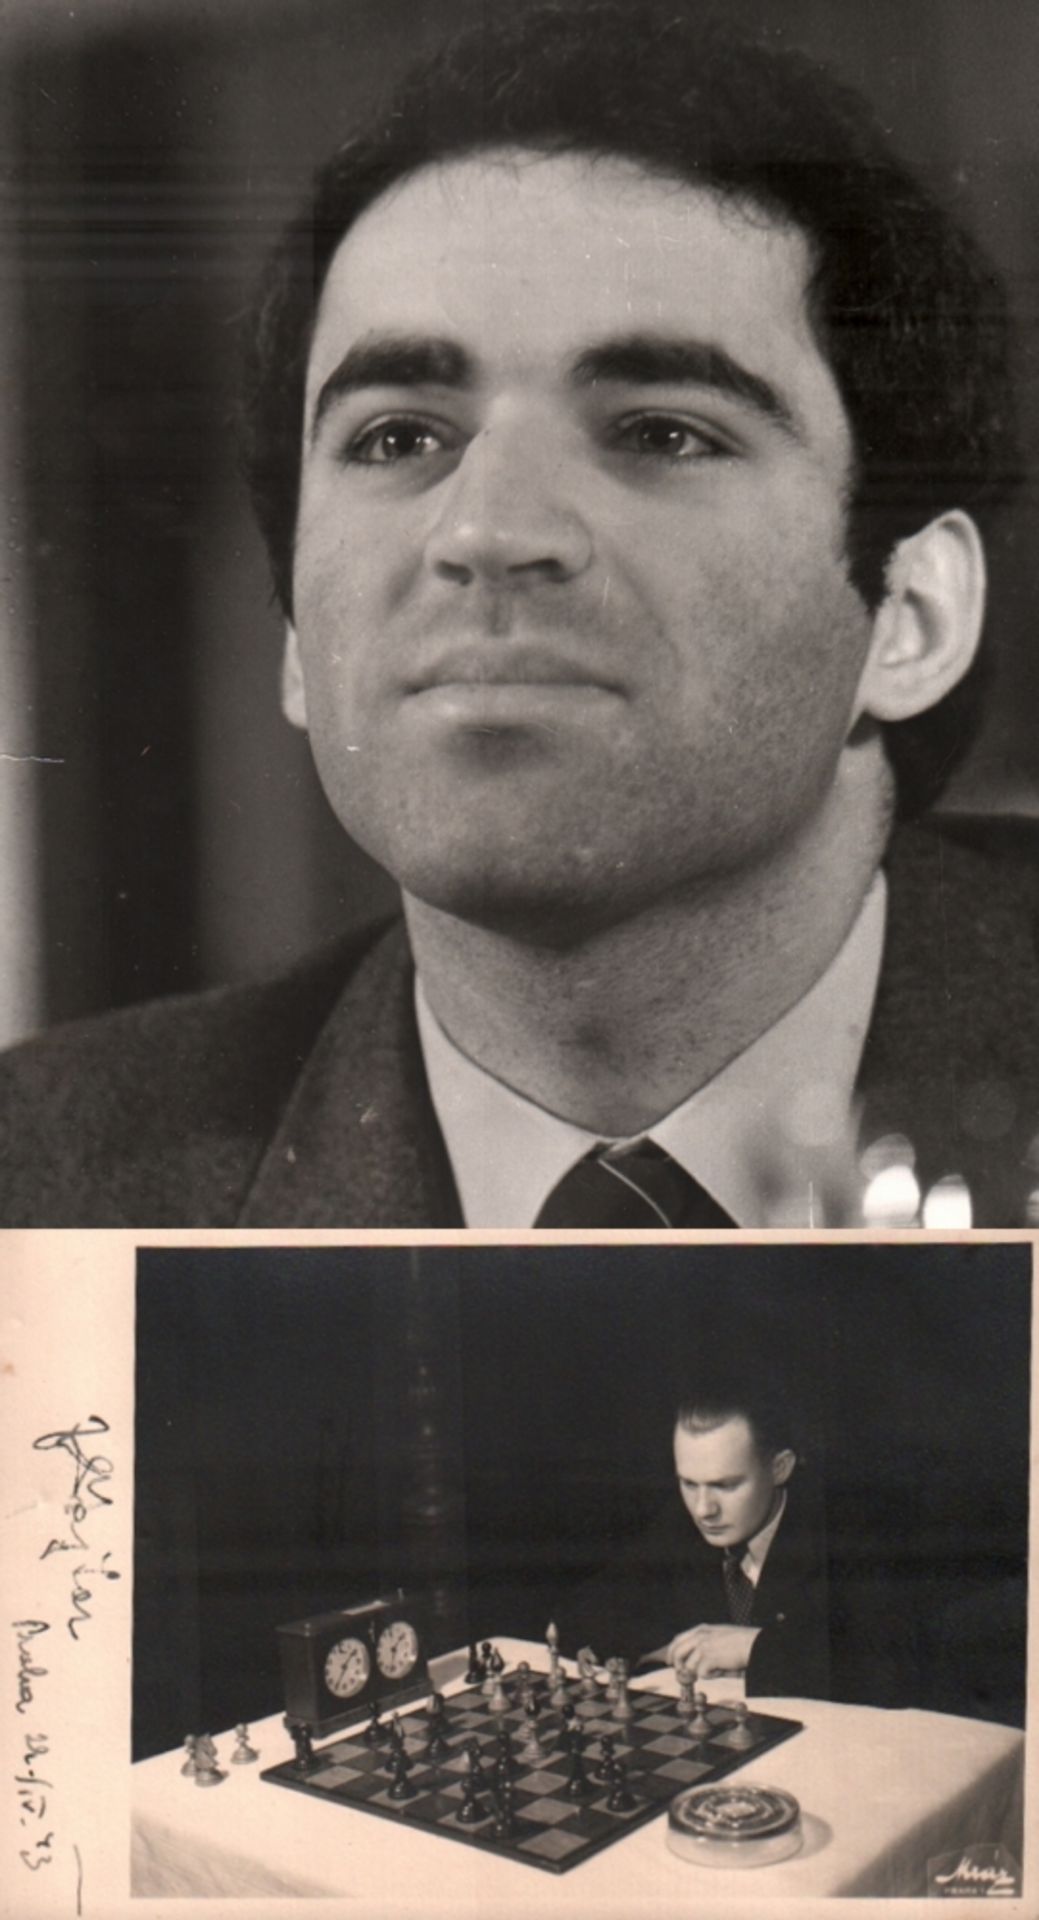 Foto. Kasparow, Garri. Schwarzweißes Foto mit einem Porträt von Garri Kasparow aus dem Jahr 1986.